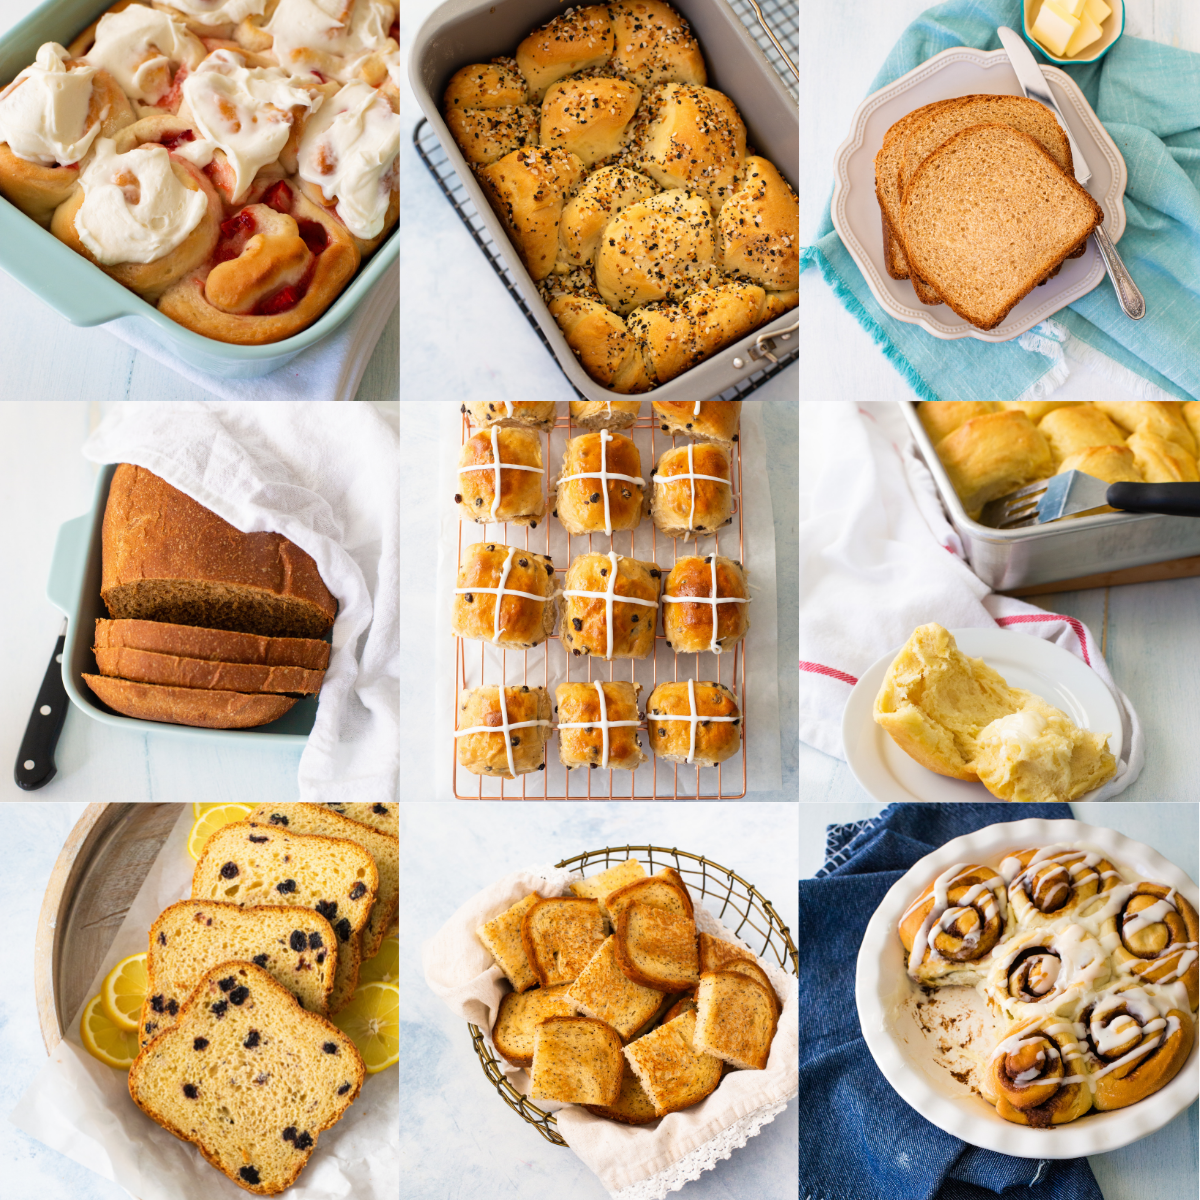 17 Hamilton Beach Bread Maker Recipes You'll Love - Insanely Good